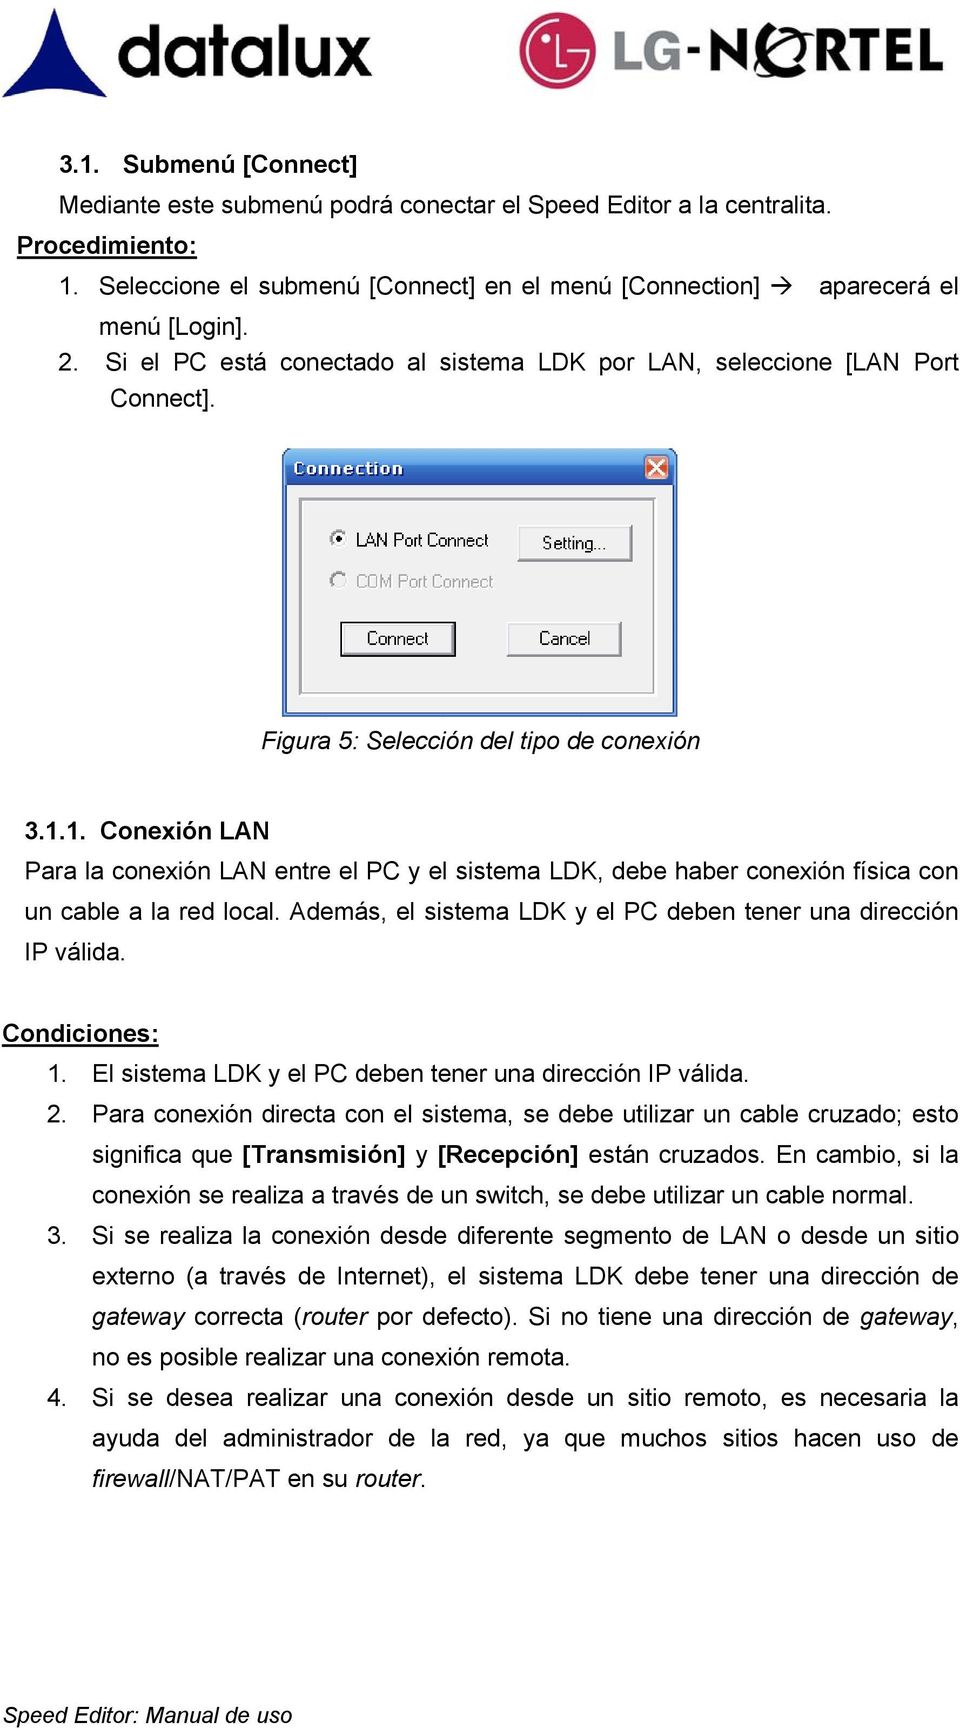 1. Conexión LAN Para la conexión LAN entre el PC y el sistema LDK, debe haber conexión física con un cable a la red local. Además, el sistema LDK y el PC deben tener una dirección IP válida.